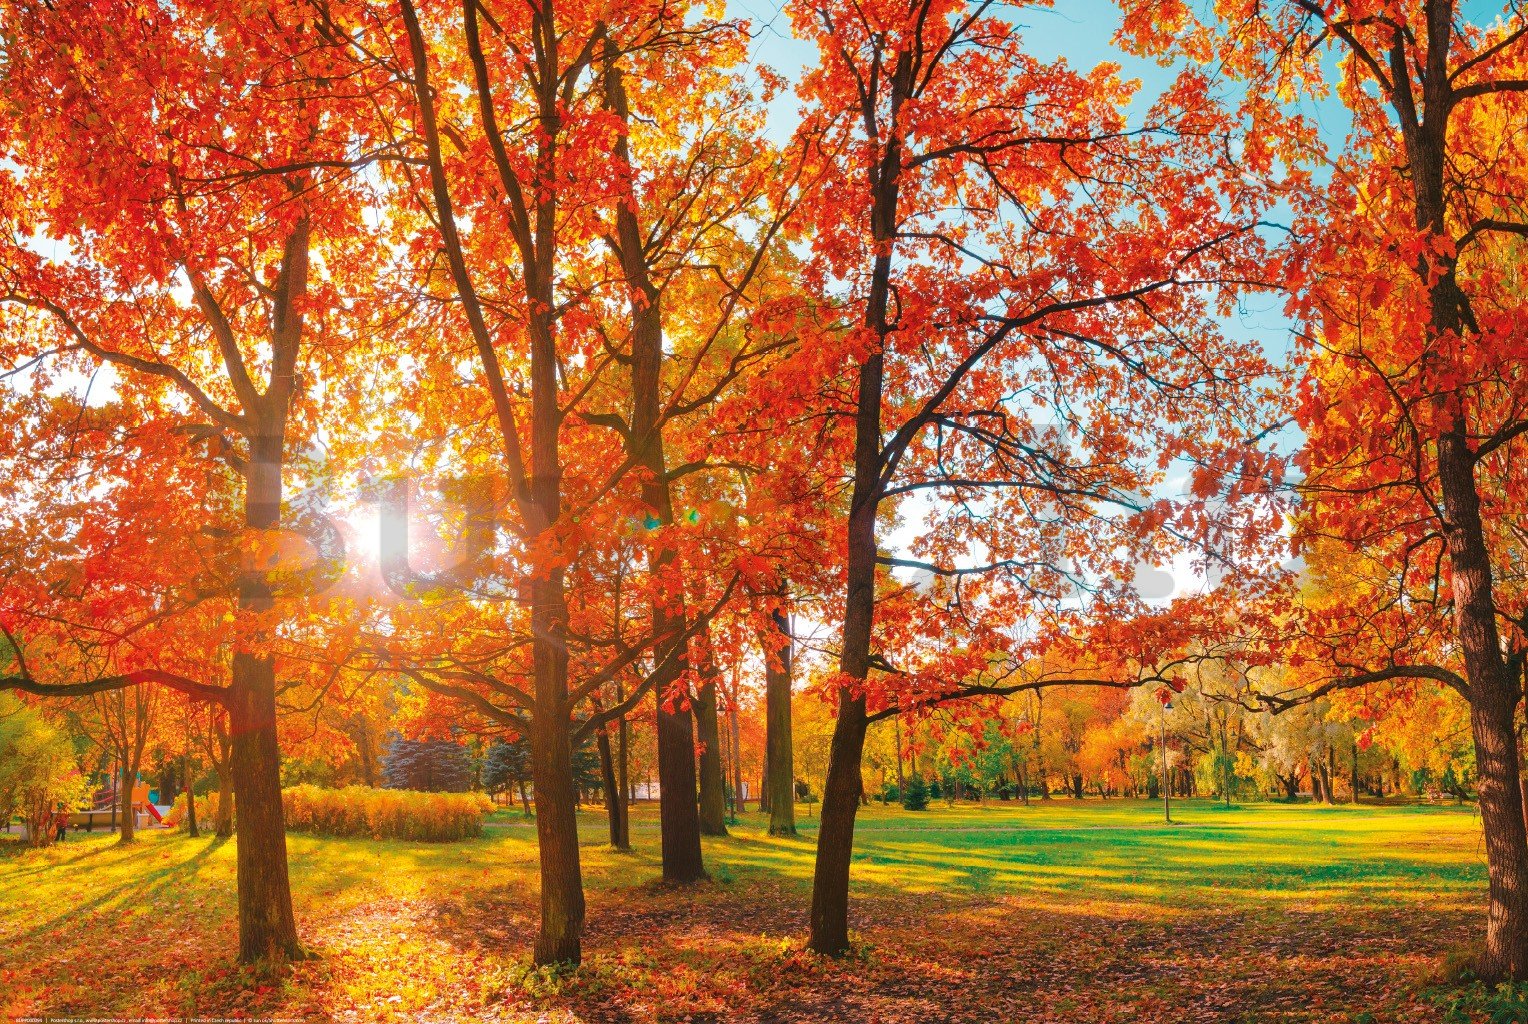 Poster: A nap az őszi parkban